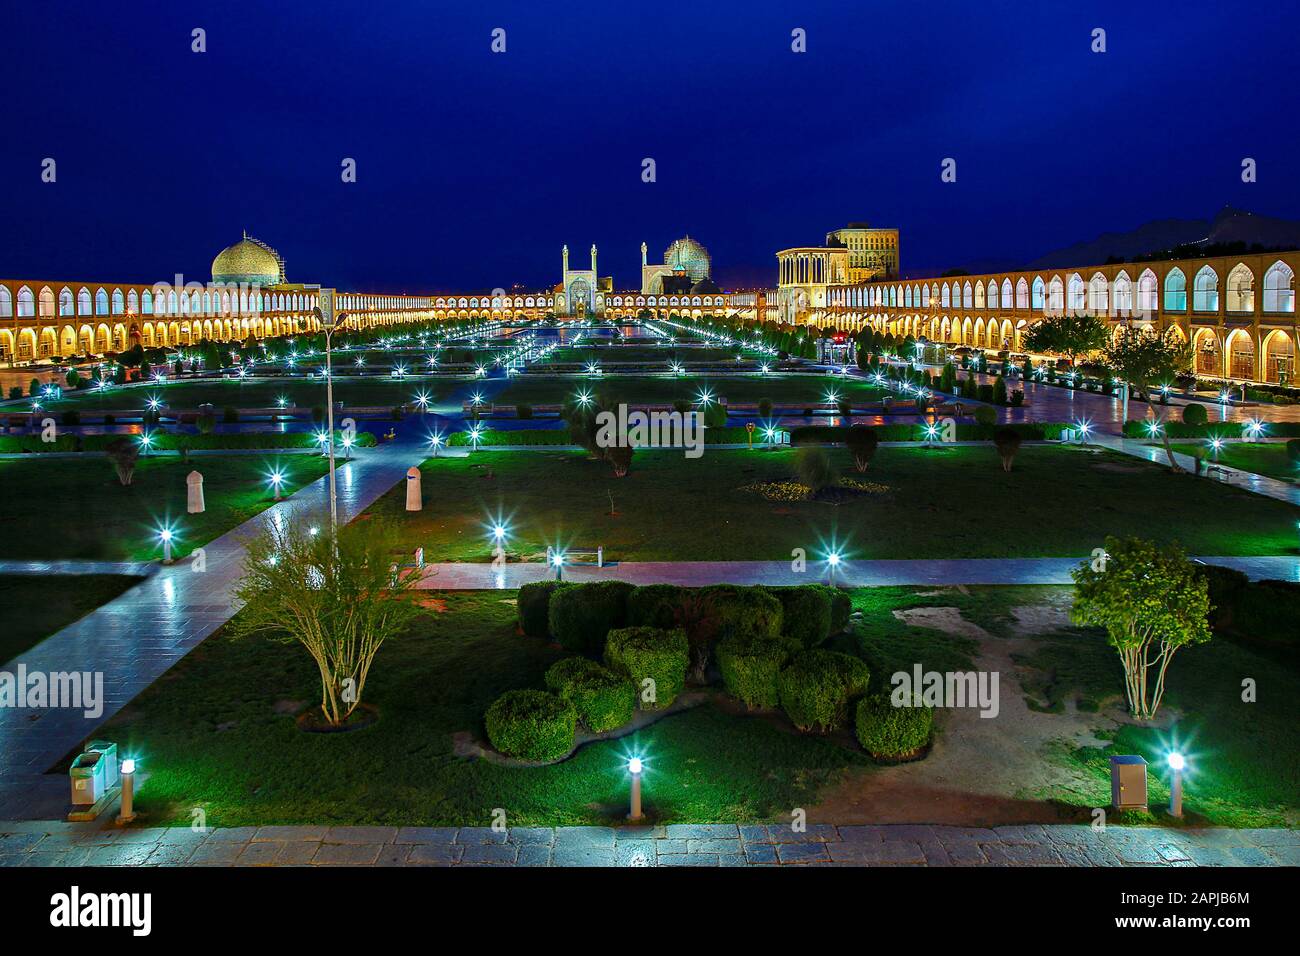 Place historique de la ville d'Isfahan, au crépuscule également connue sous le nom de place Naqshejahan ou place Imam, Iran Banque D'Images